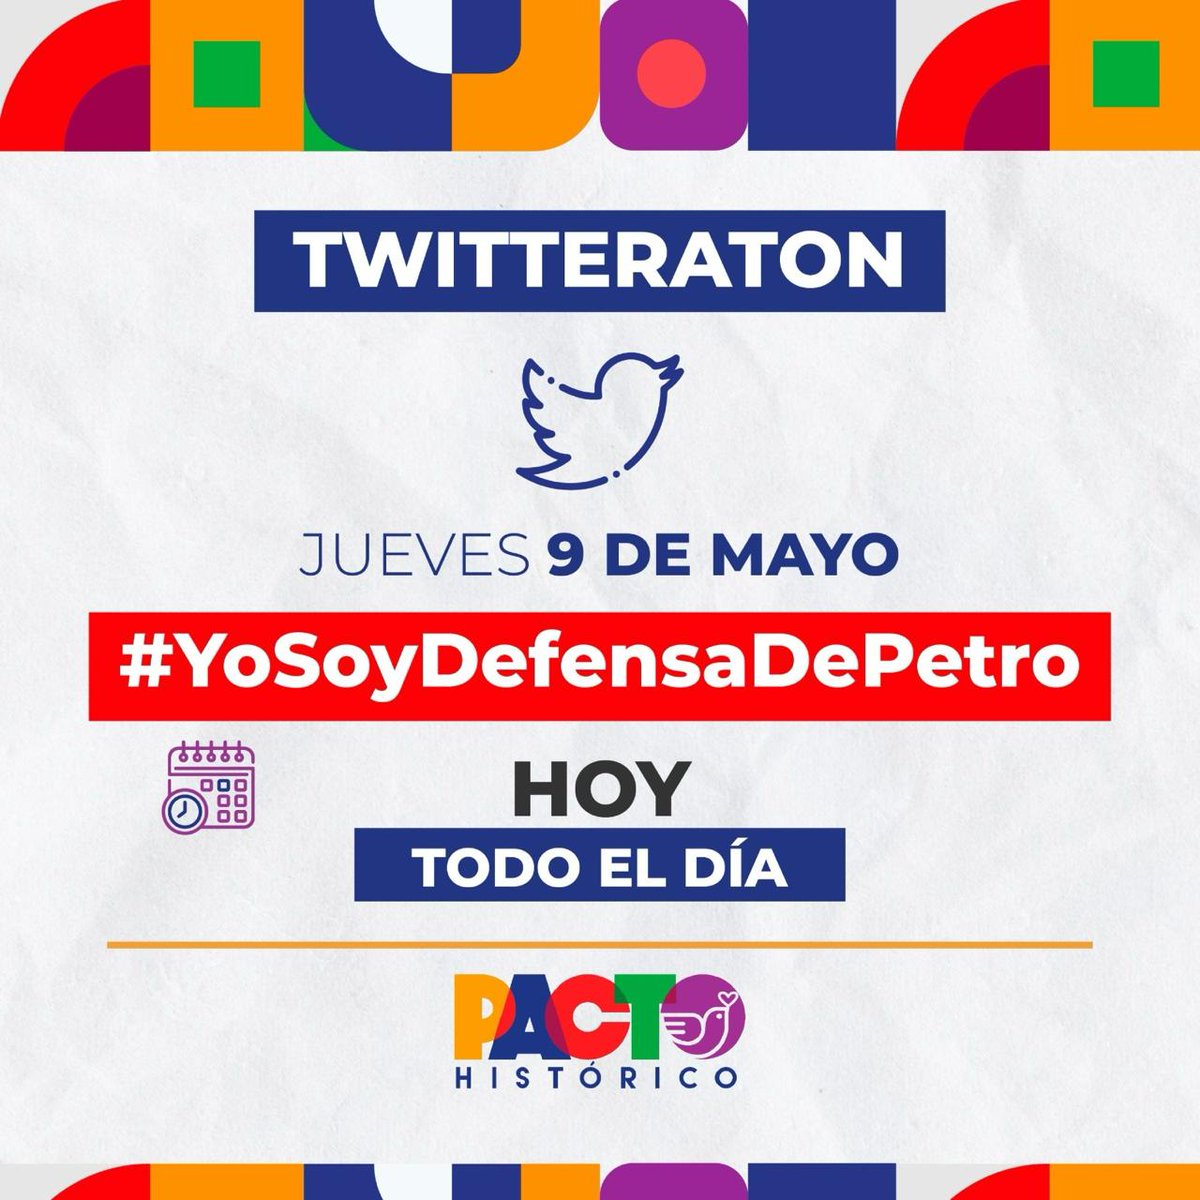 #ColombiaVaBien 🇨🇴
#YoSoyDefensorDePetro